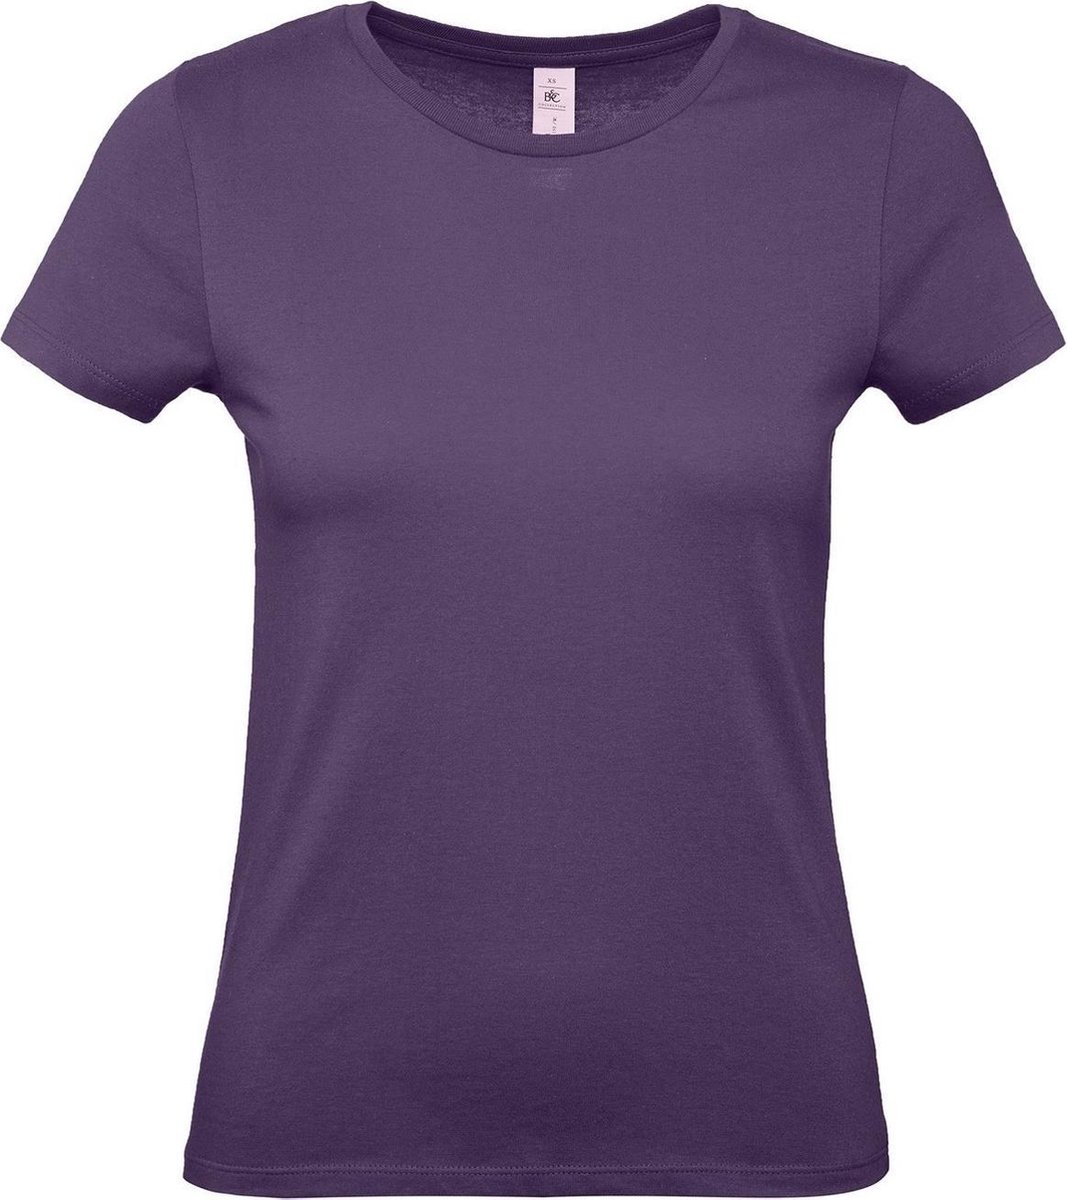 Set van 3x stuks paars basic t-shirts met ronde hals voor dames - katoen - 145 grams - paarse shirts / kleding, maat: L (40)